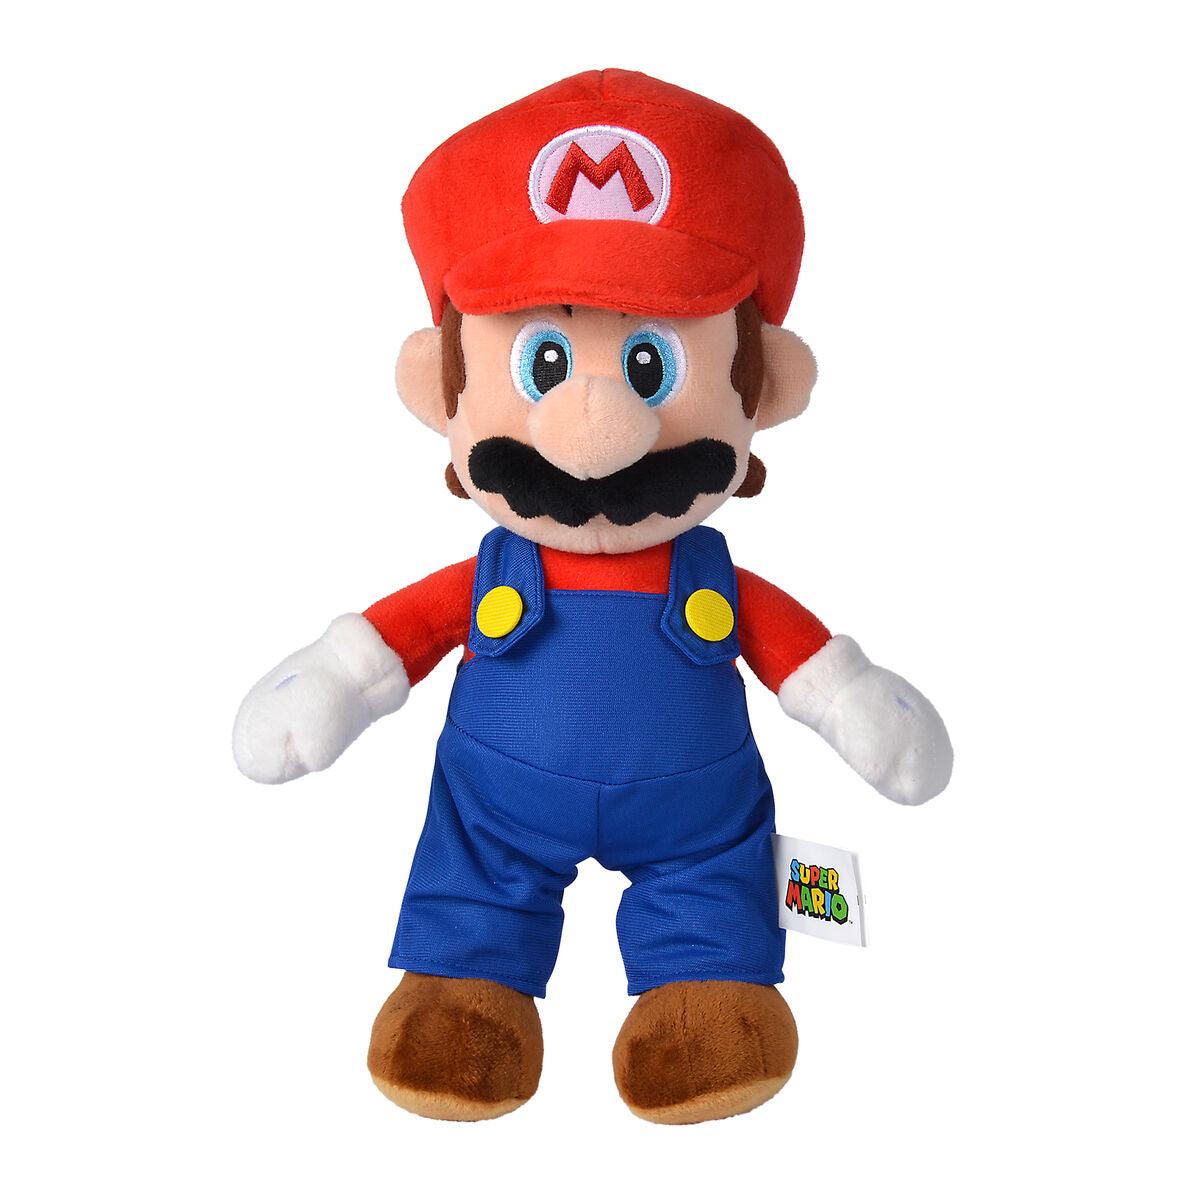 Super Mario Bros Mario plush toy 30cm - Nintendo - Ginga Toys